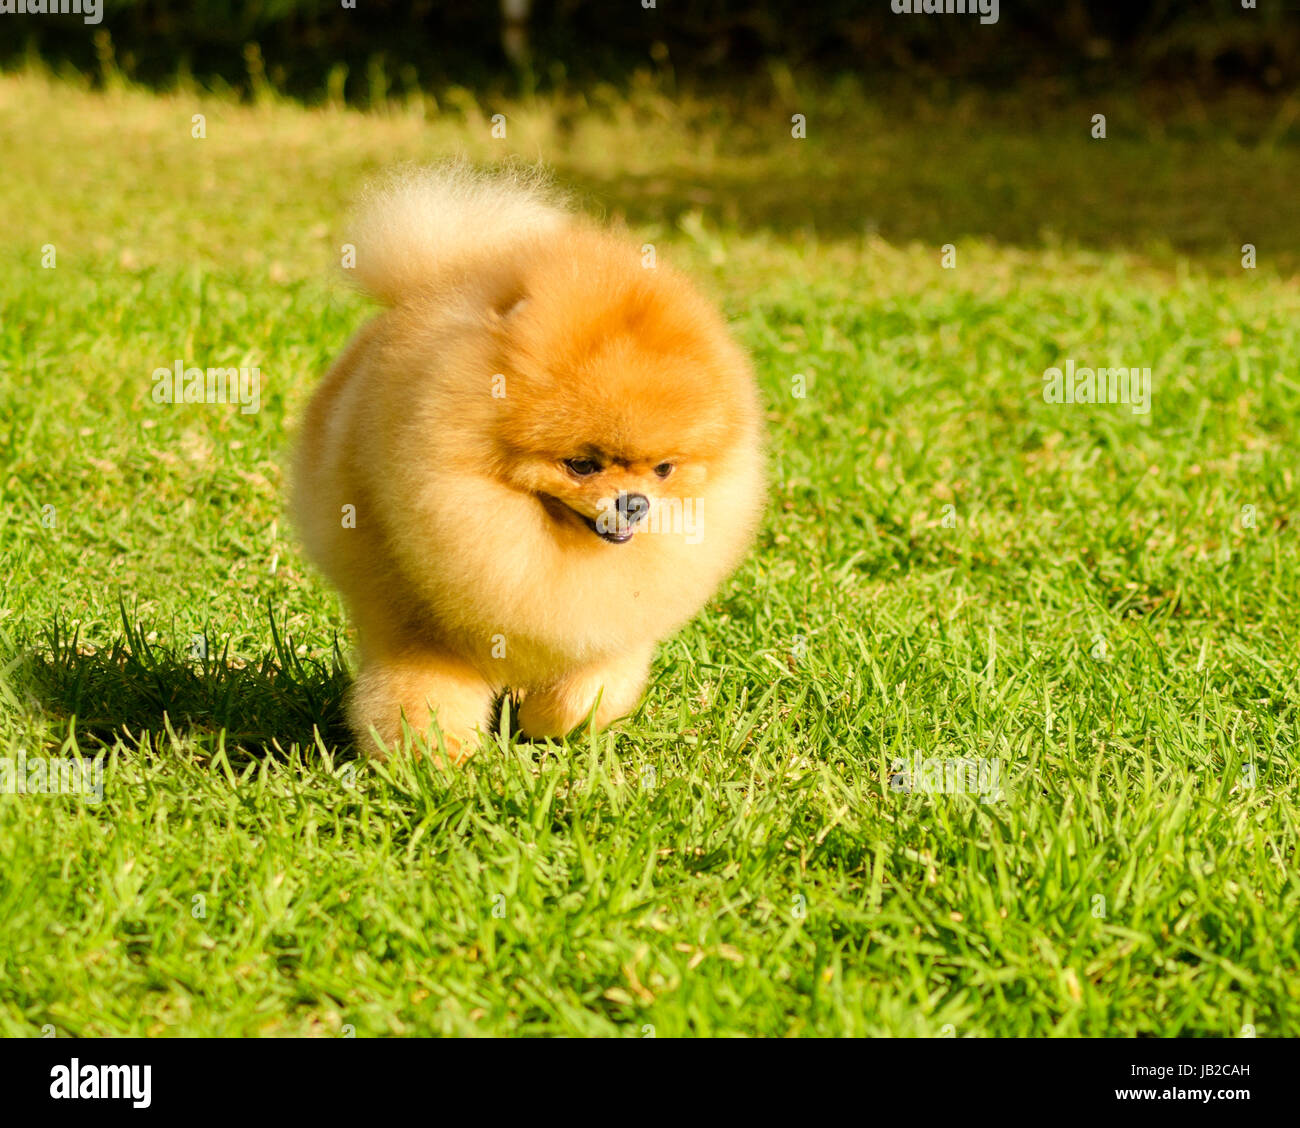 Ein kleiner Junge schöne flauschige orange Pommerschen Welpen Hund zu Fuß  auf dem Rasen. POM Hunde gelten als sehr guter Begleiter Hunde zu machen  und werden in der Kategorie Spielzeug Stockfotografie -